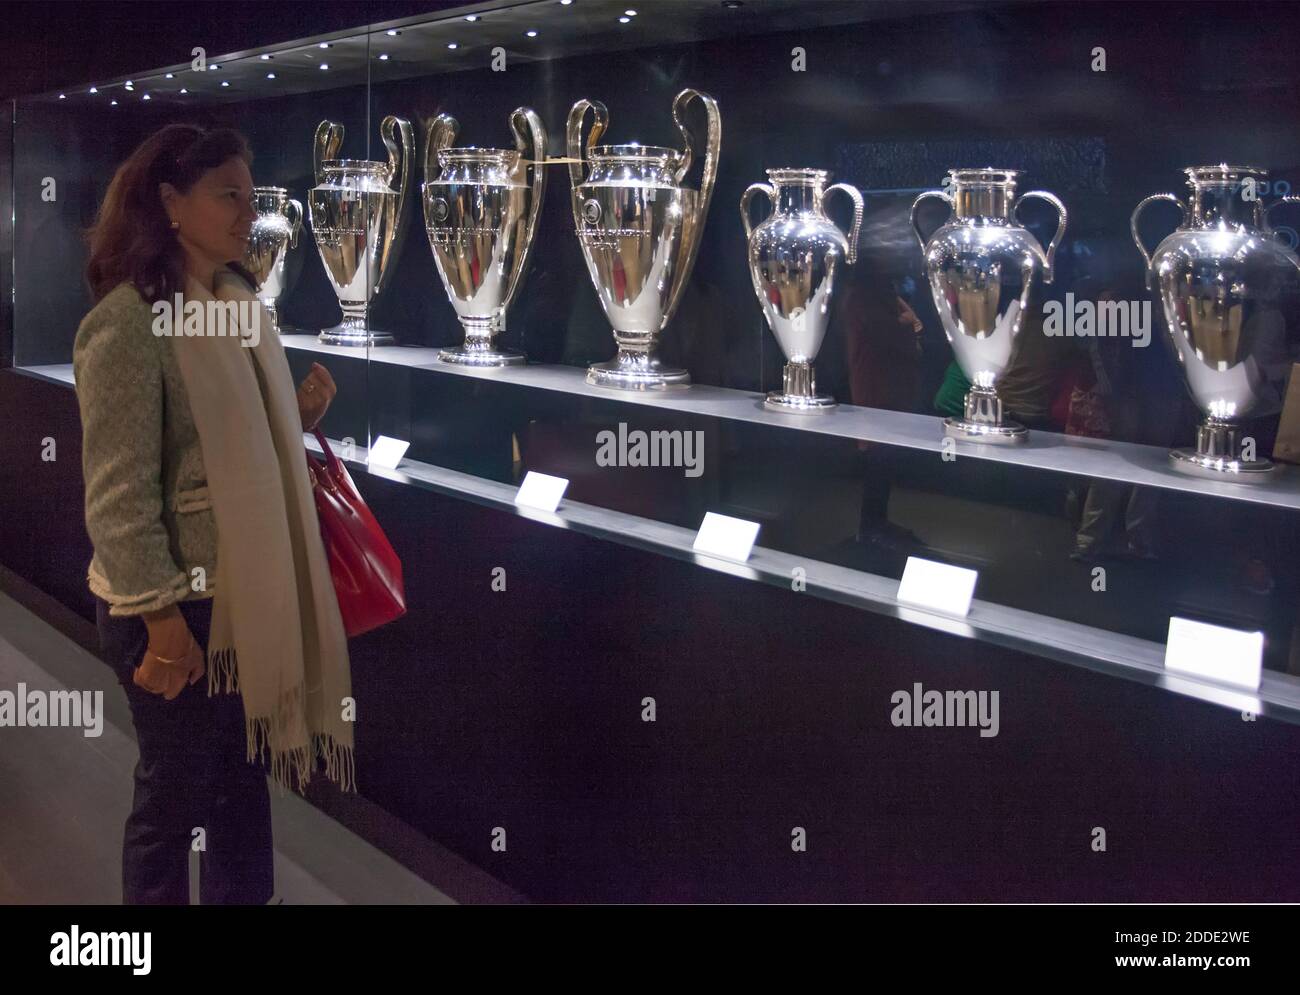 Femme regarde l'argenterie gagnée par le Real Madrid football Club dans le stade Santiago Bernabéu, Madrid, Espagne Banque D'Images